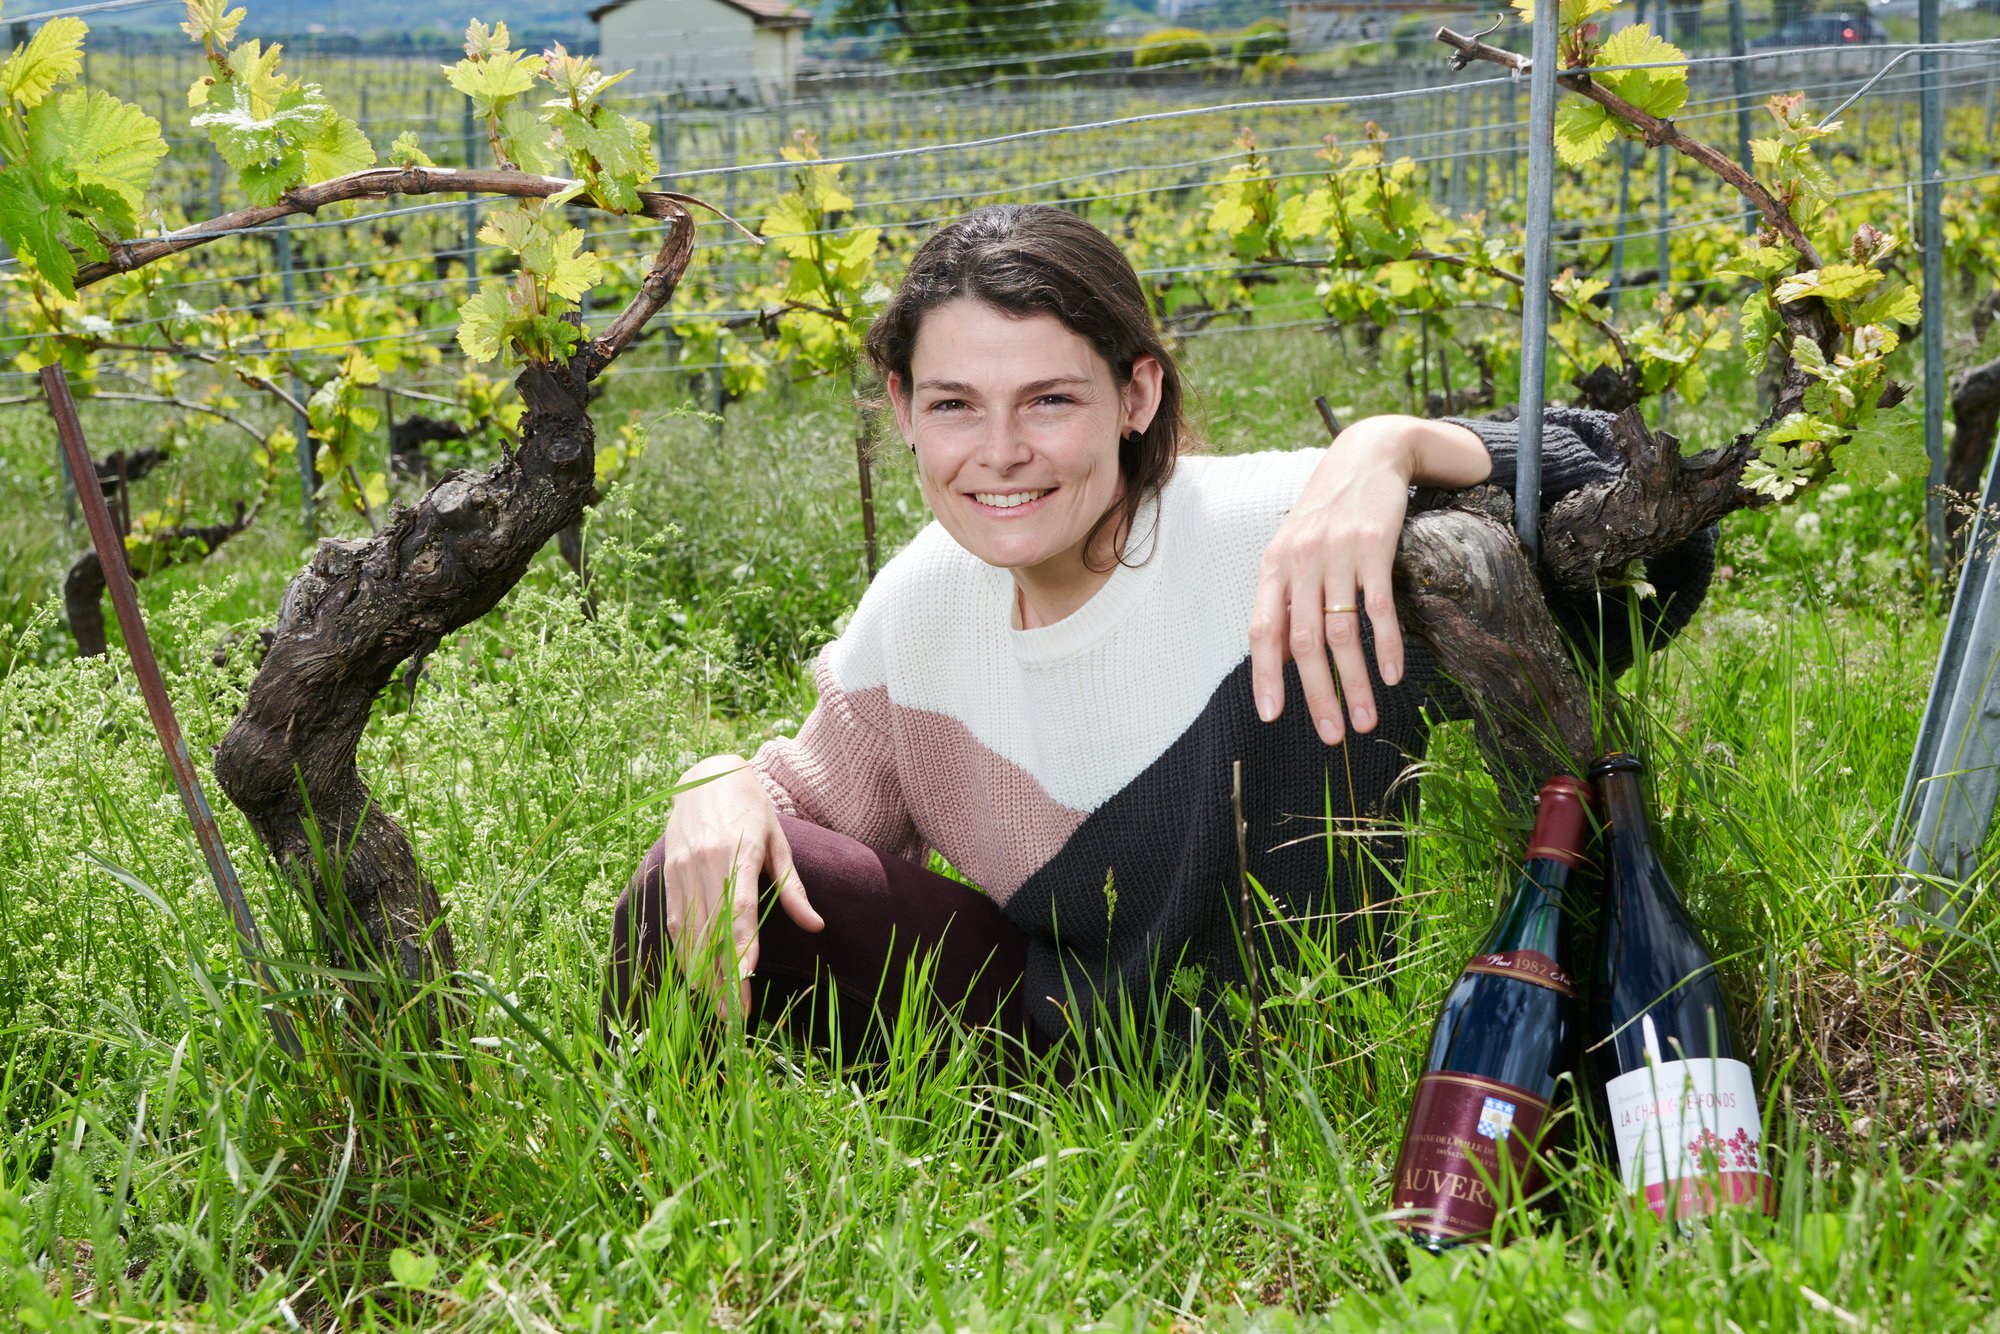 Les vins de la Ville de La Chaux-de-Fonds, dont Laure Houlmann est la gestionnaire, viennent en réalité de vignes situées à Auvernier.